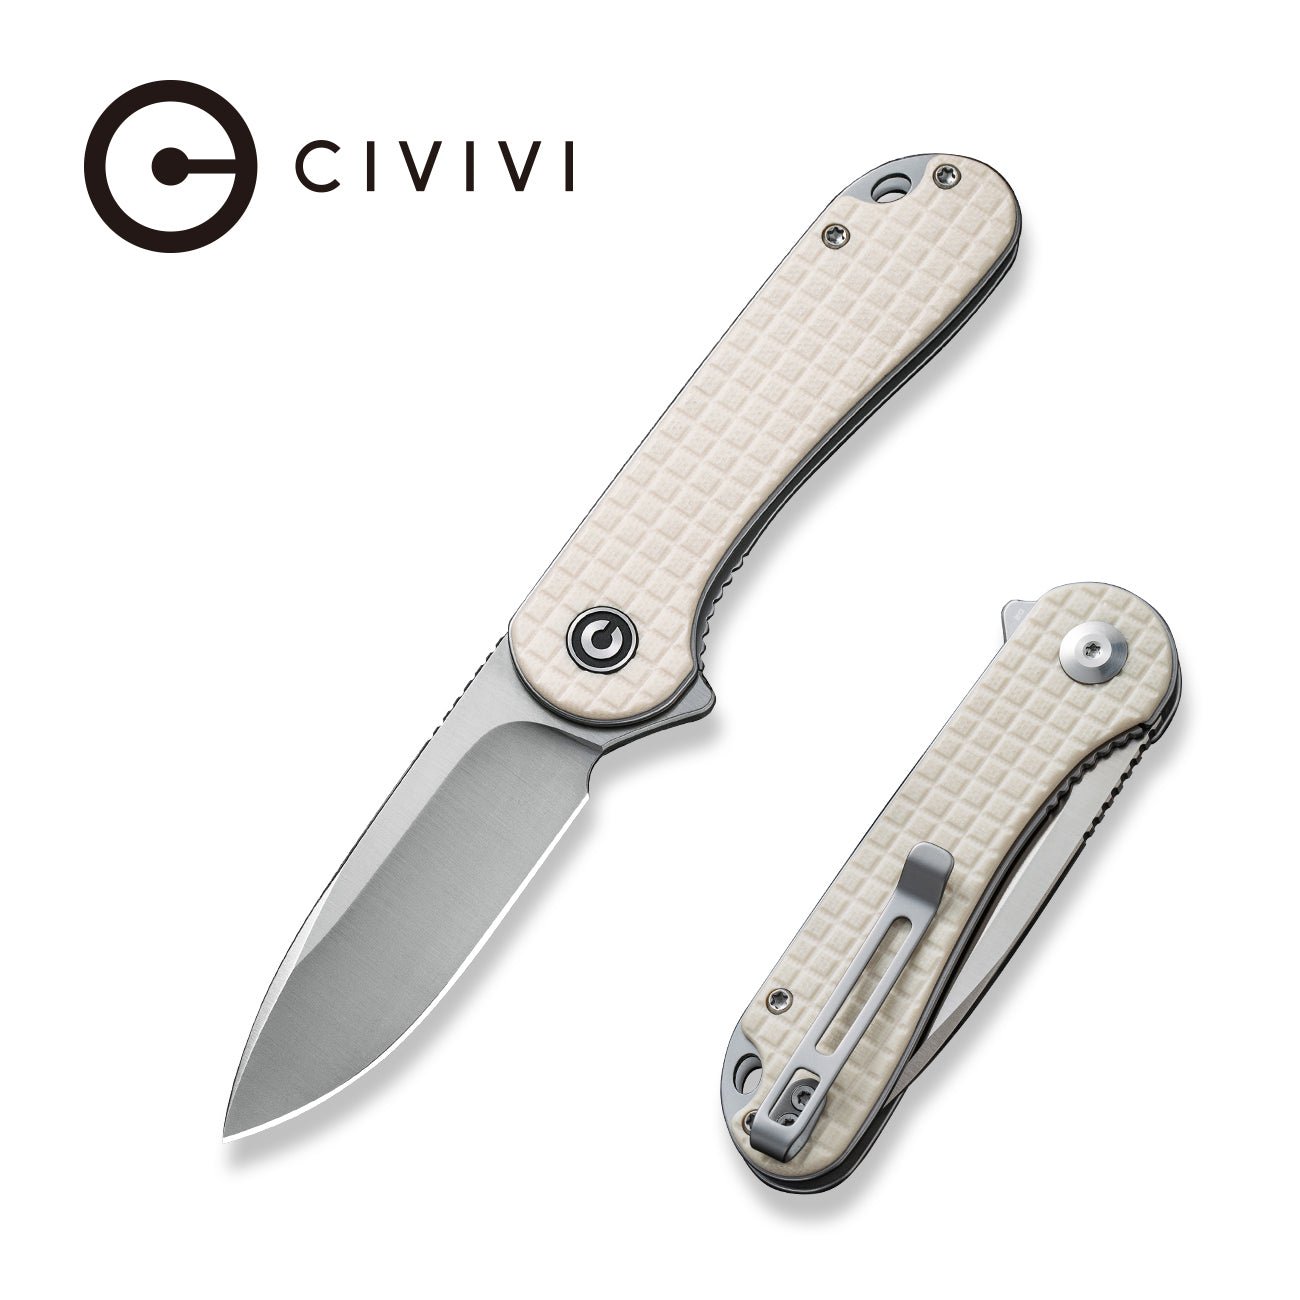 https://www.civivi.com/cdn/shop/products/civivi-elementum-flipper-knife-frag-patterned-ivory-g10-handle-296-satin-finished-d2-blade-c907a-3-821982.jpg?v=1680318433